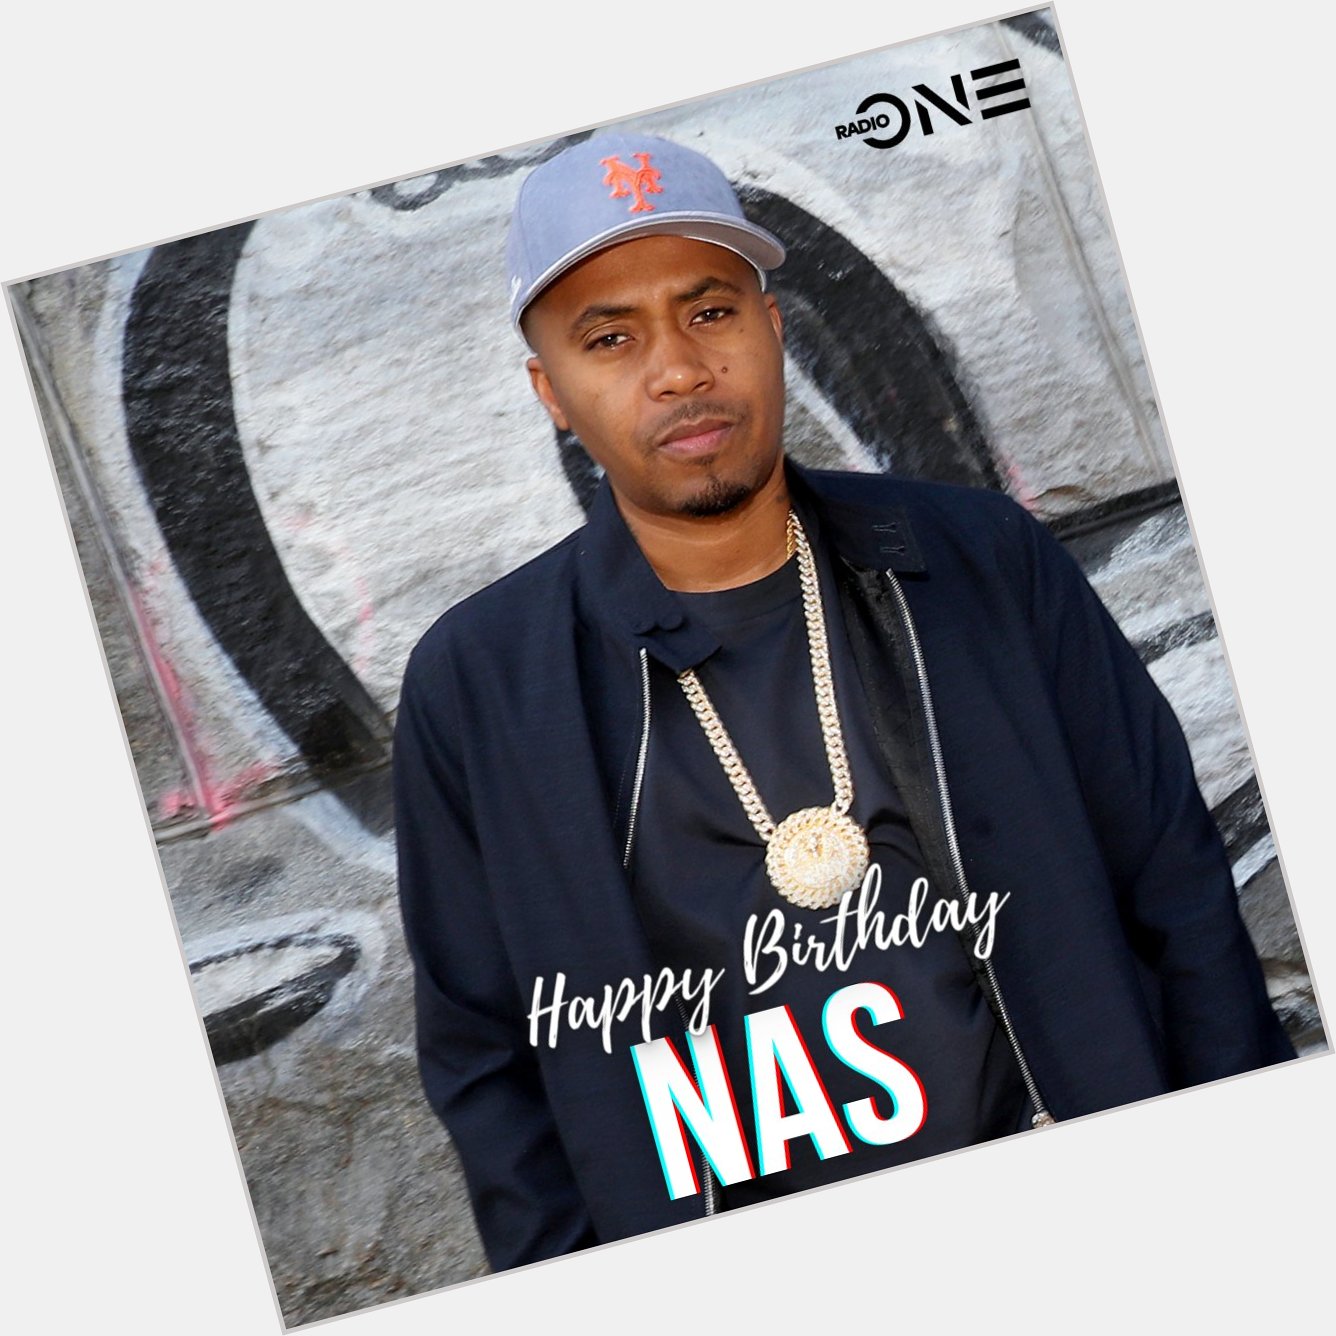 Happy birthday, Nas!  